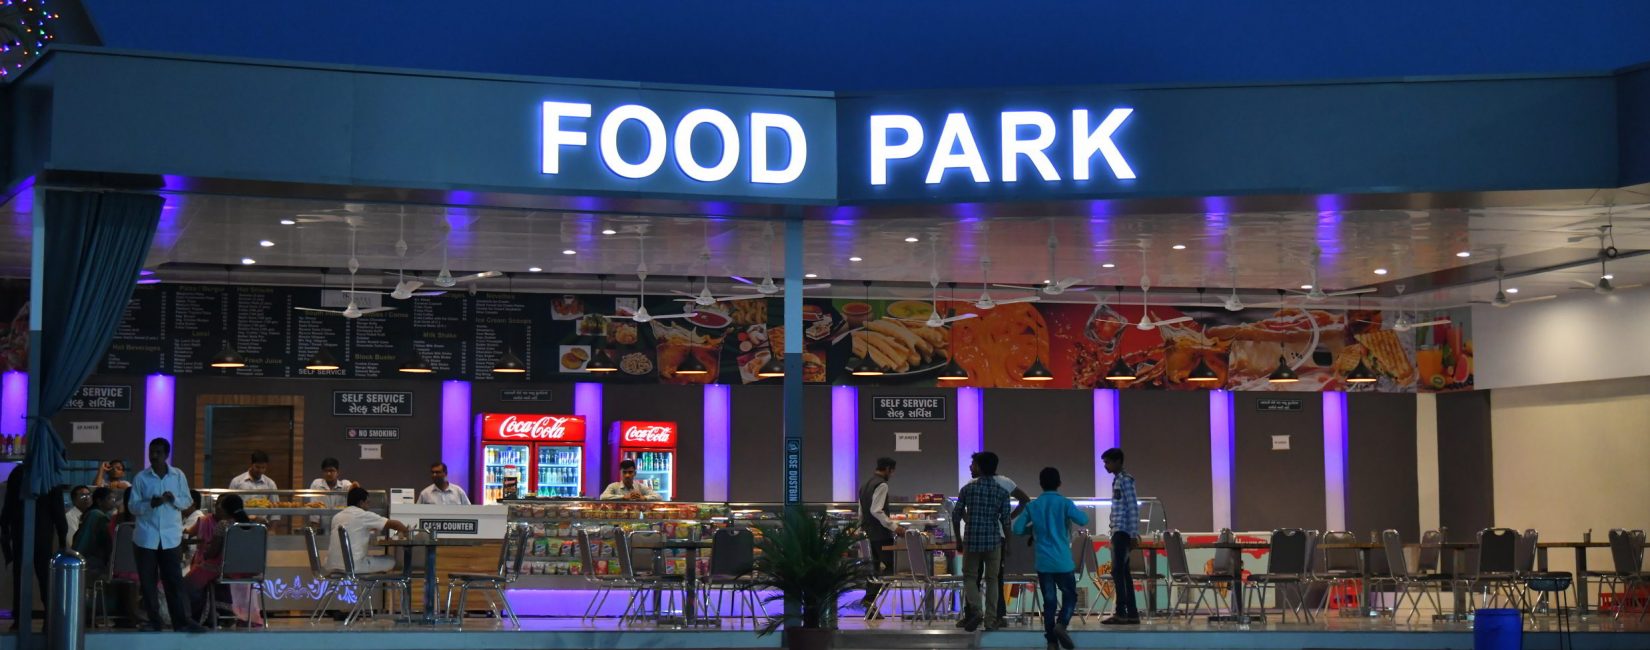 Fast food - Food Park